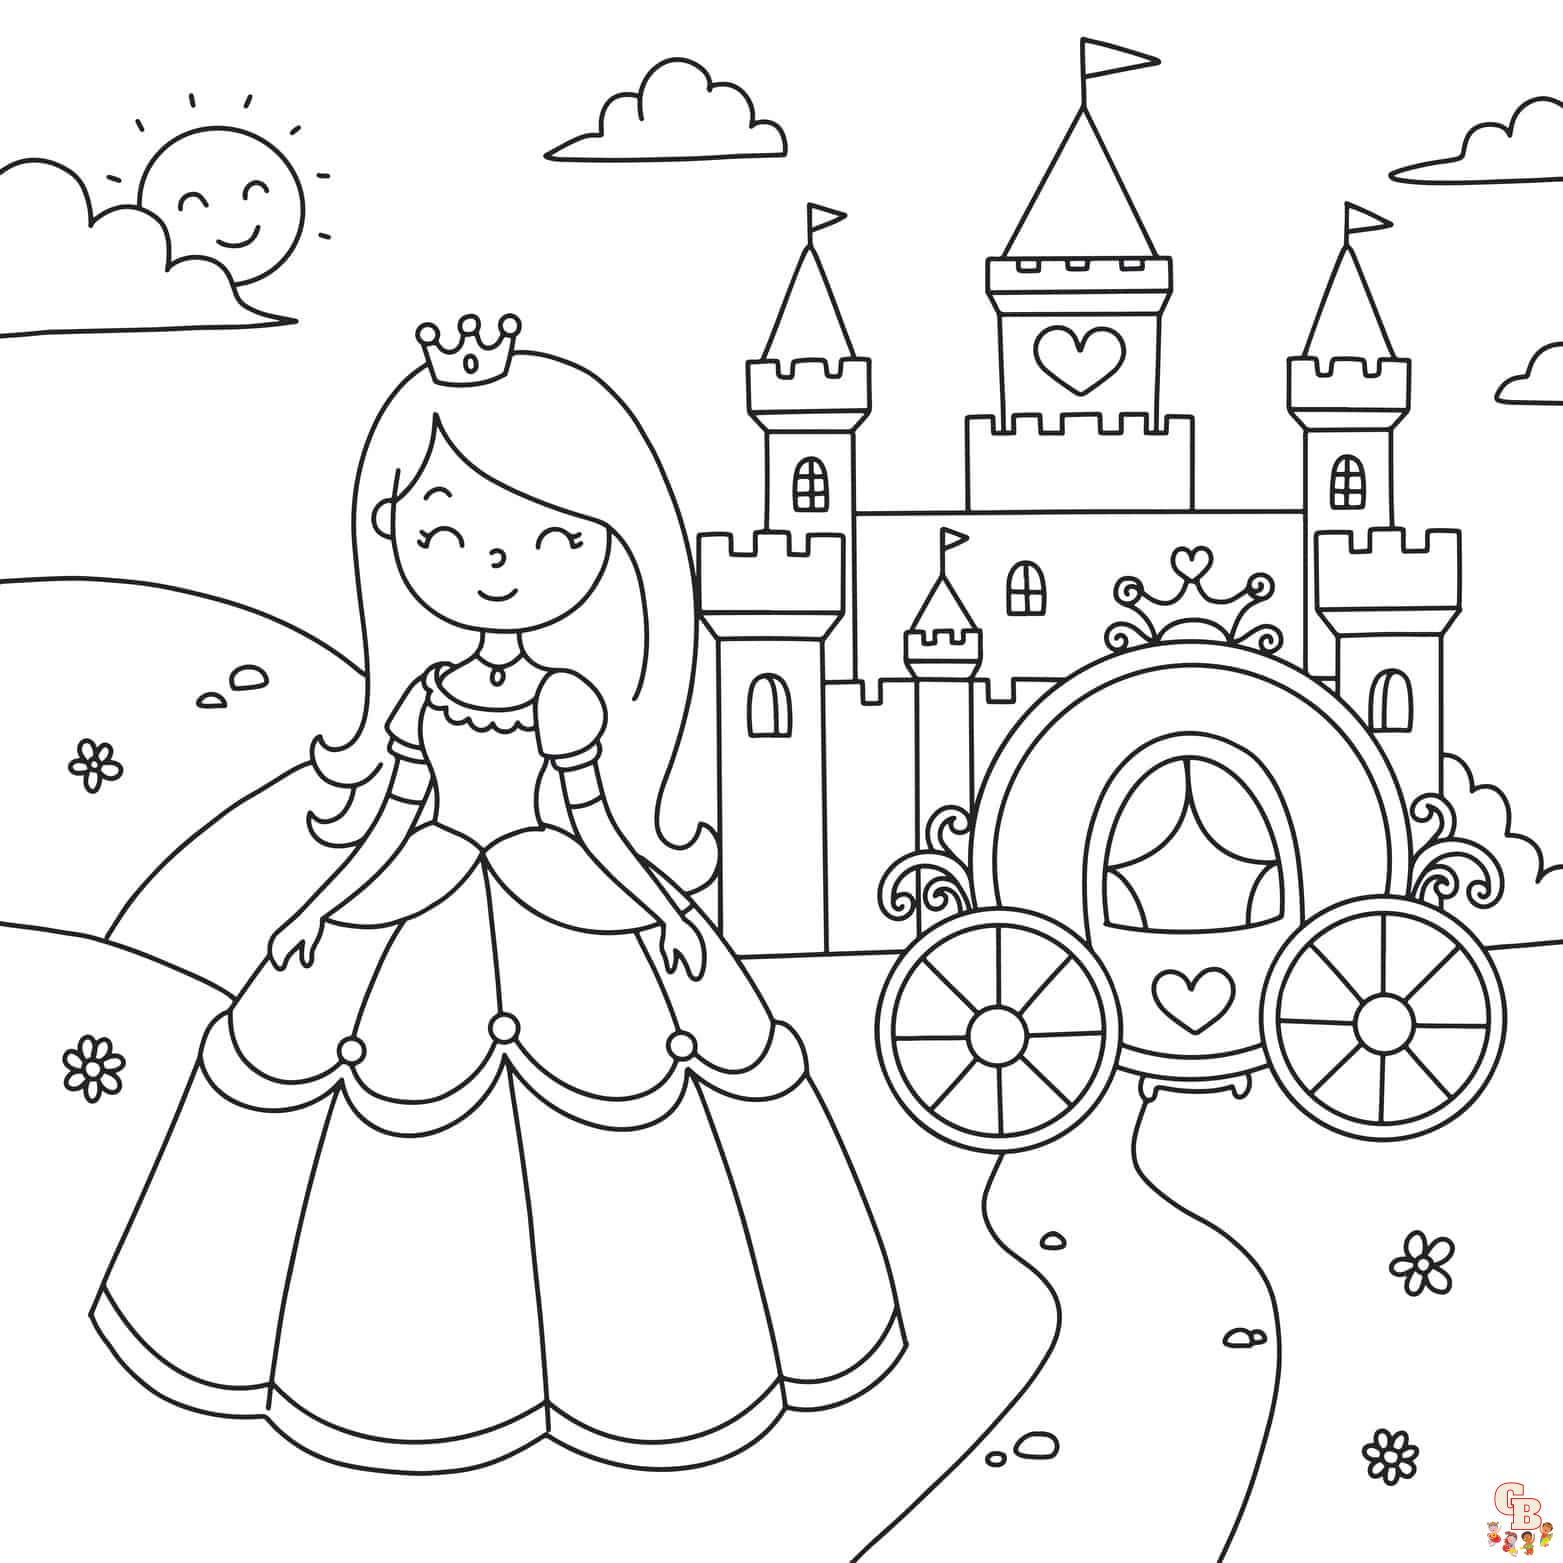 Imprimible gratis princess castle coloring pages para niãos